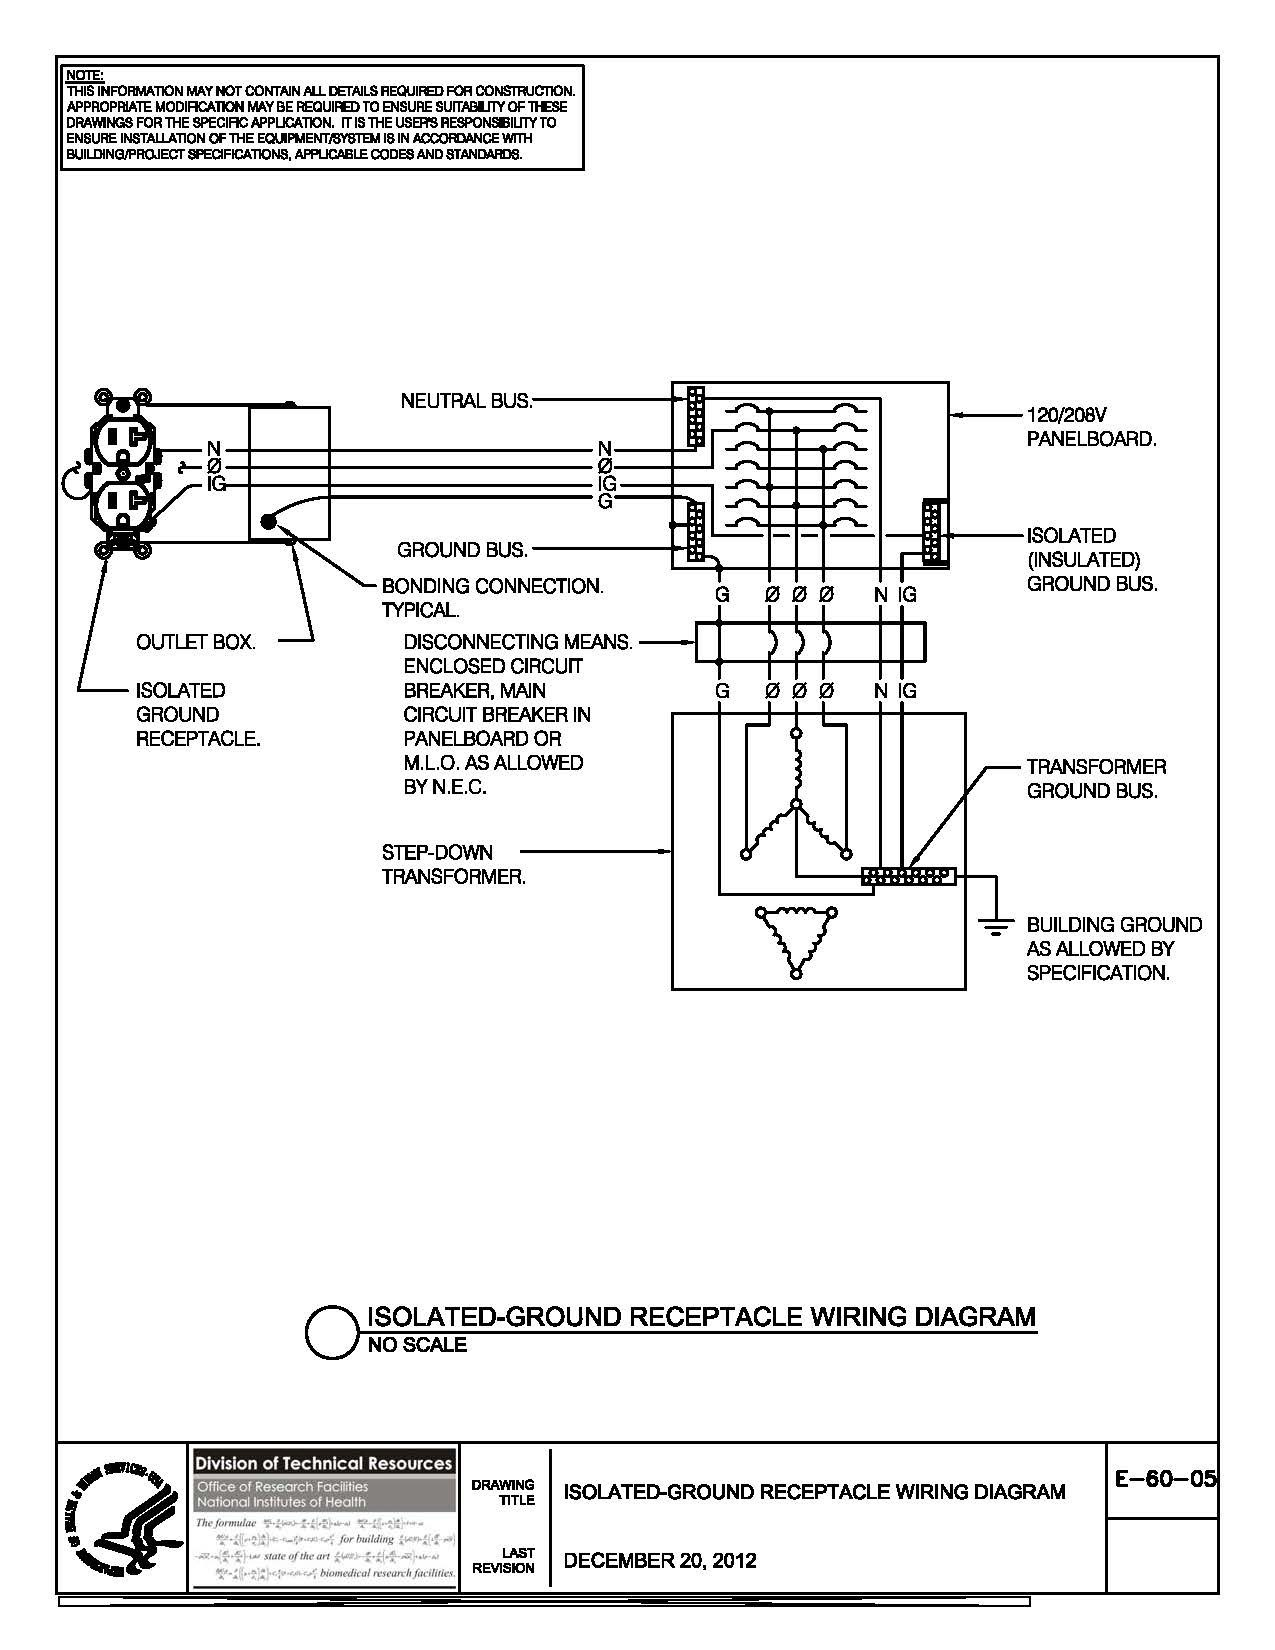 Modbus Wiring Diagrams - Wiring Diagram - Rs485 Wiring Diagram